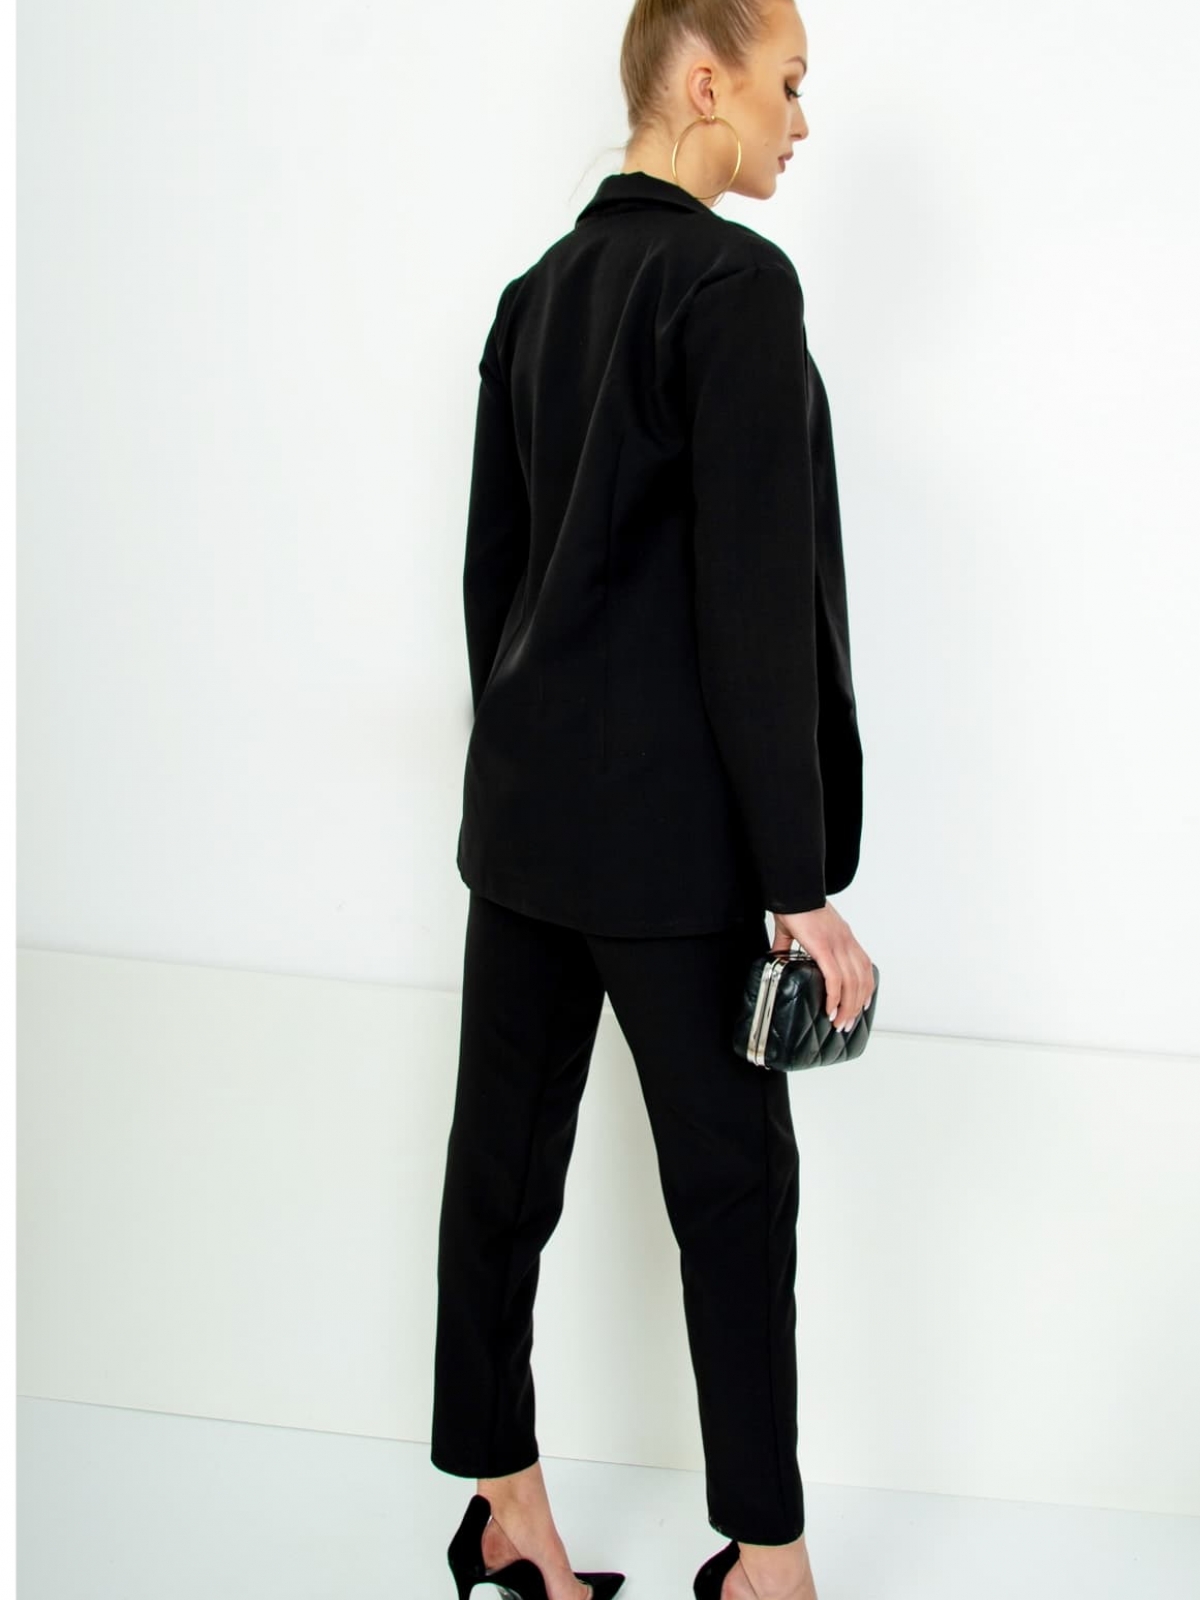 Classic design suit set in black